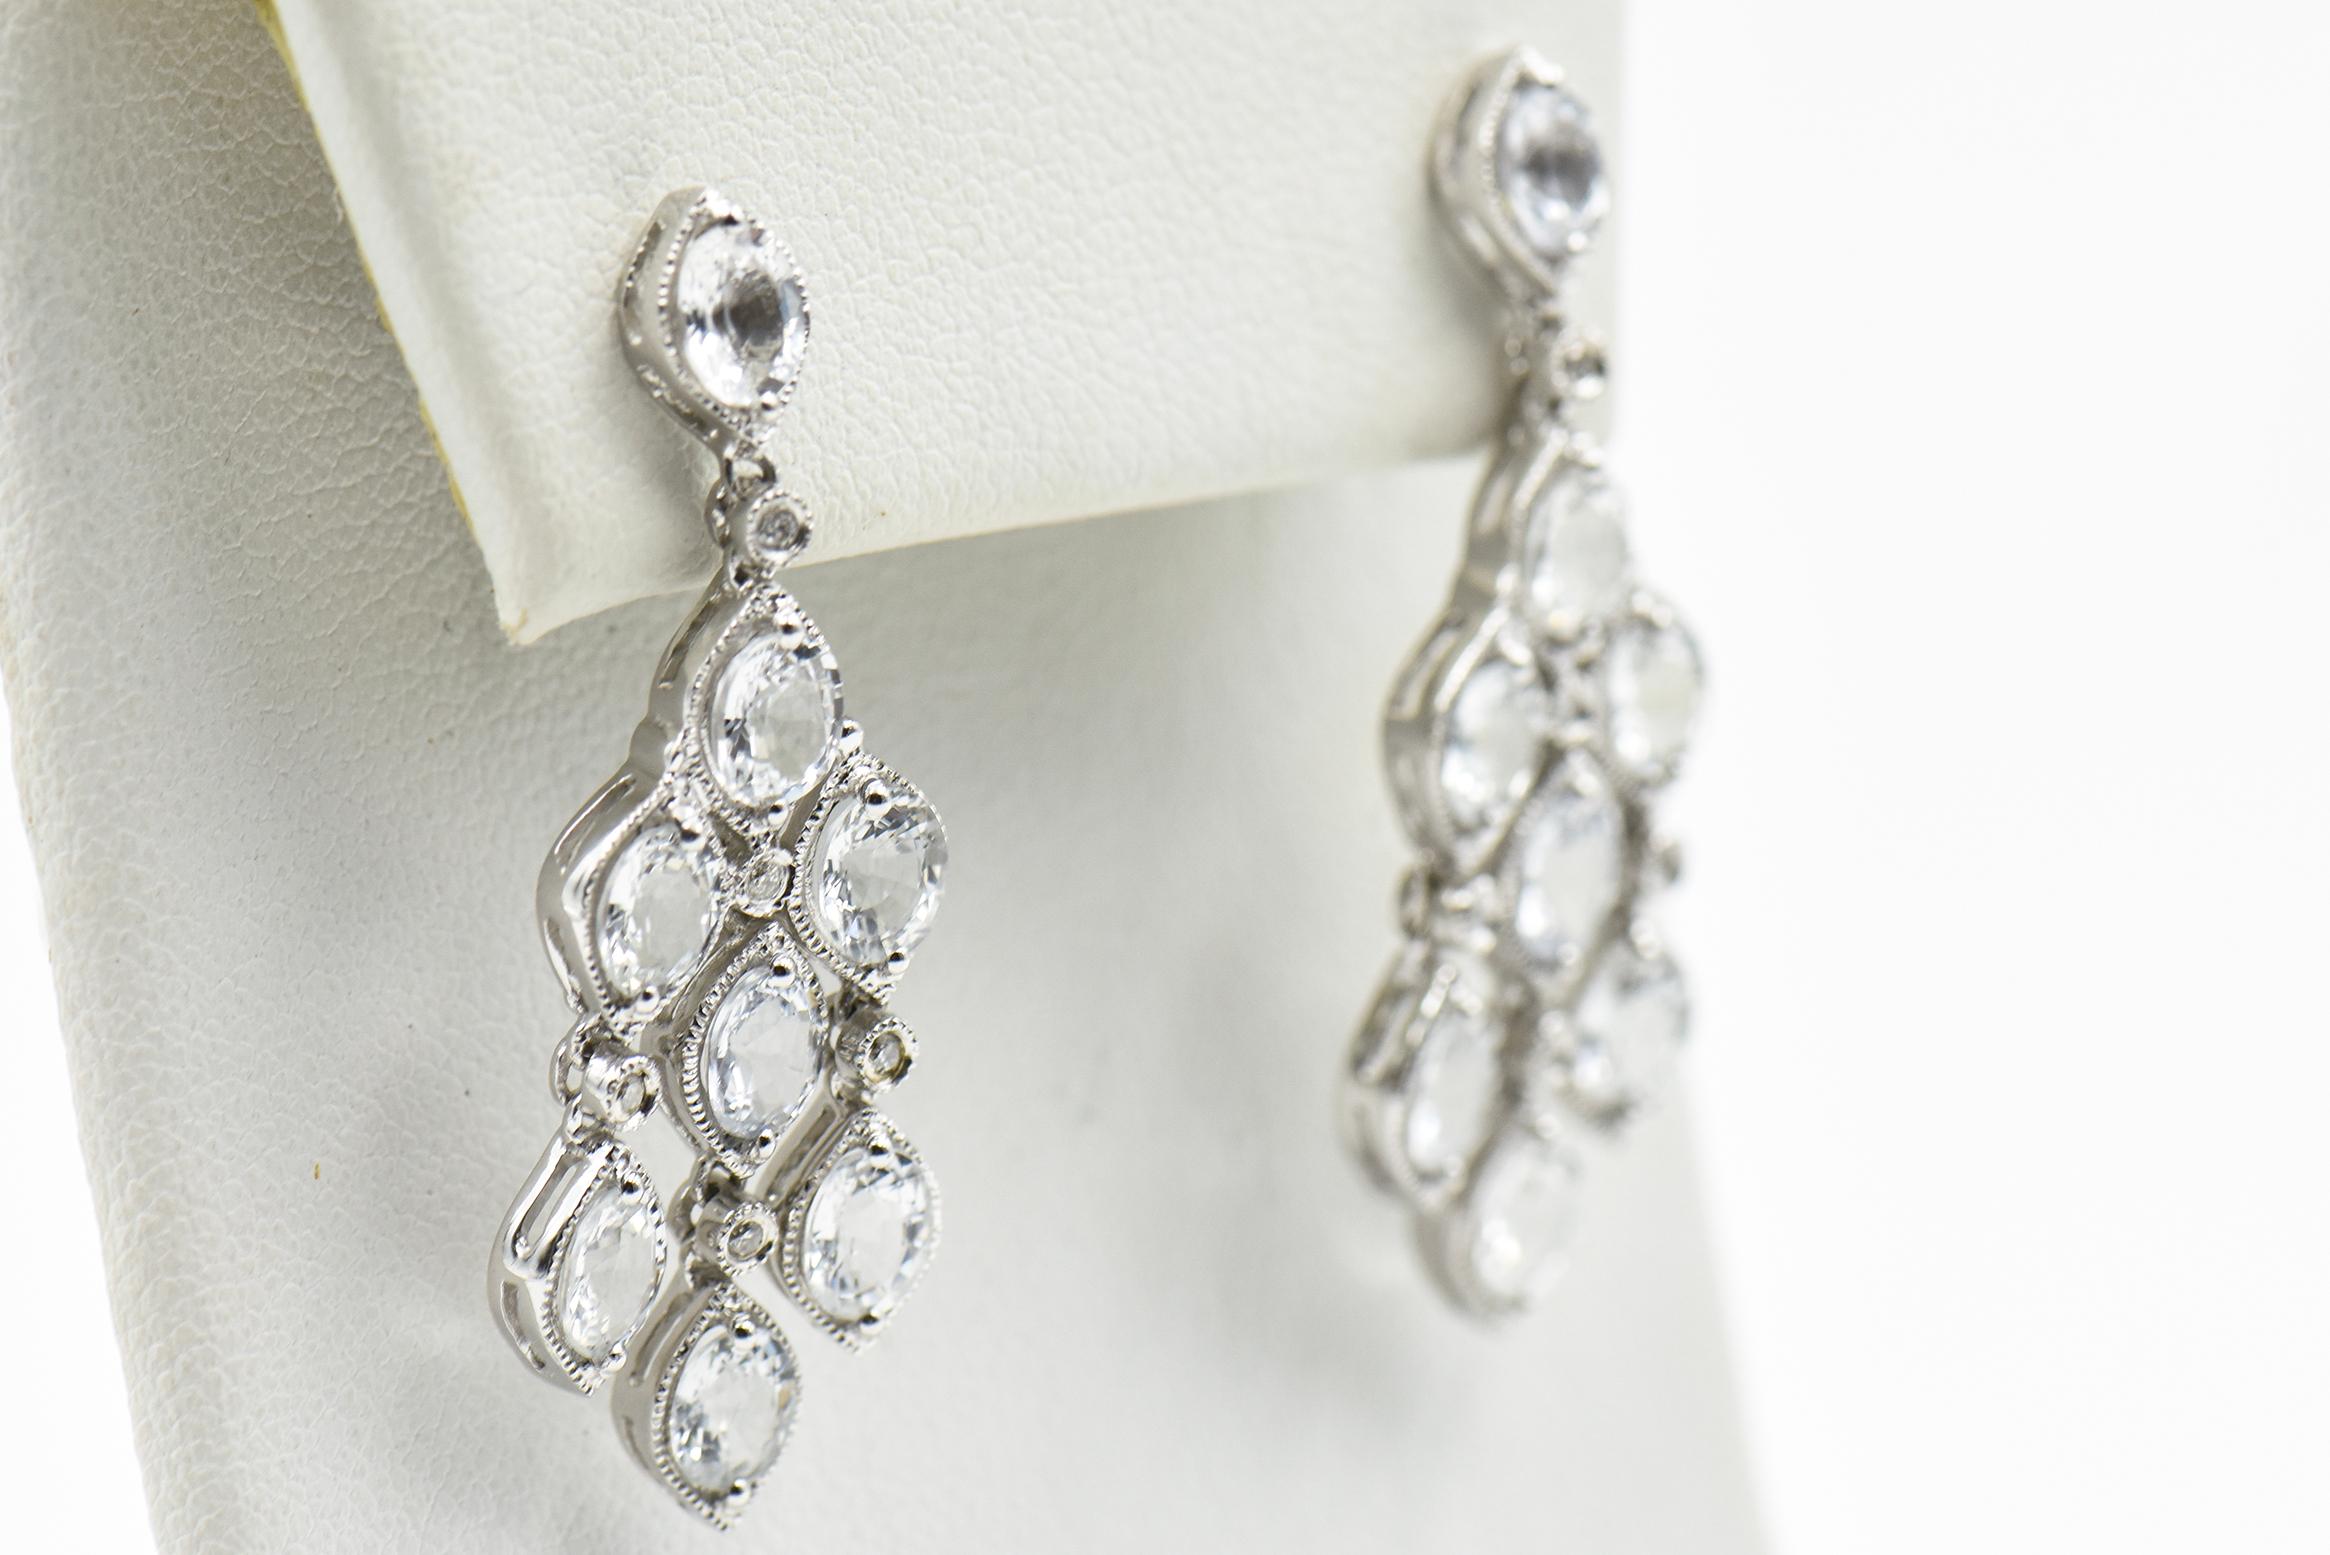 Boucles d'oreilles pendantes de style chandelier en or blanc 18k avec CZs.  Parfait pour une réception avec cravate noire.